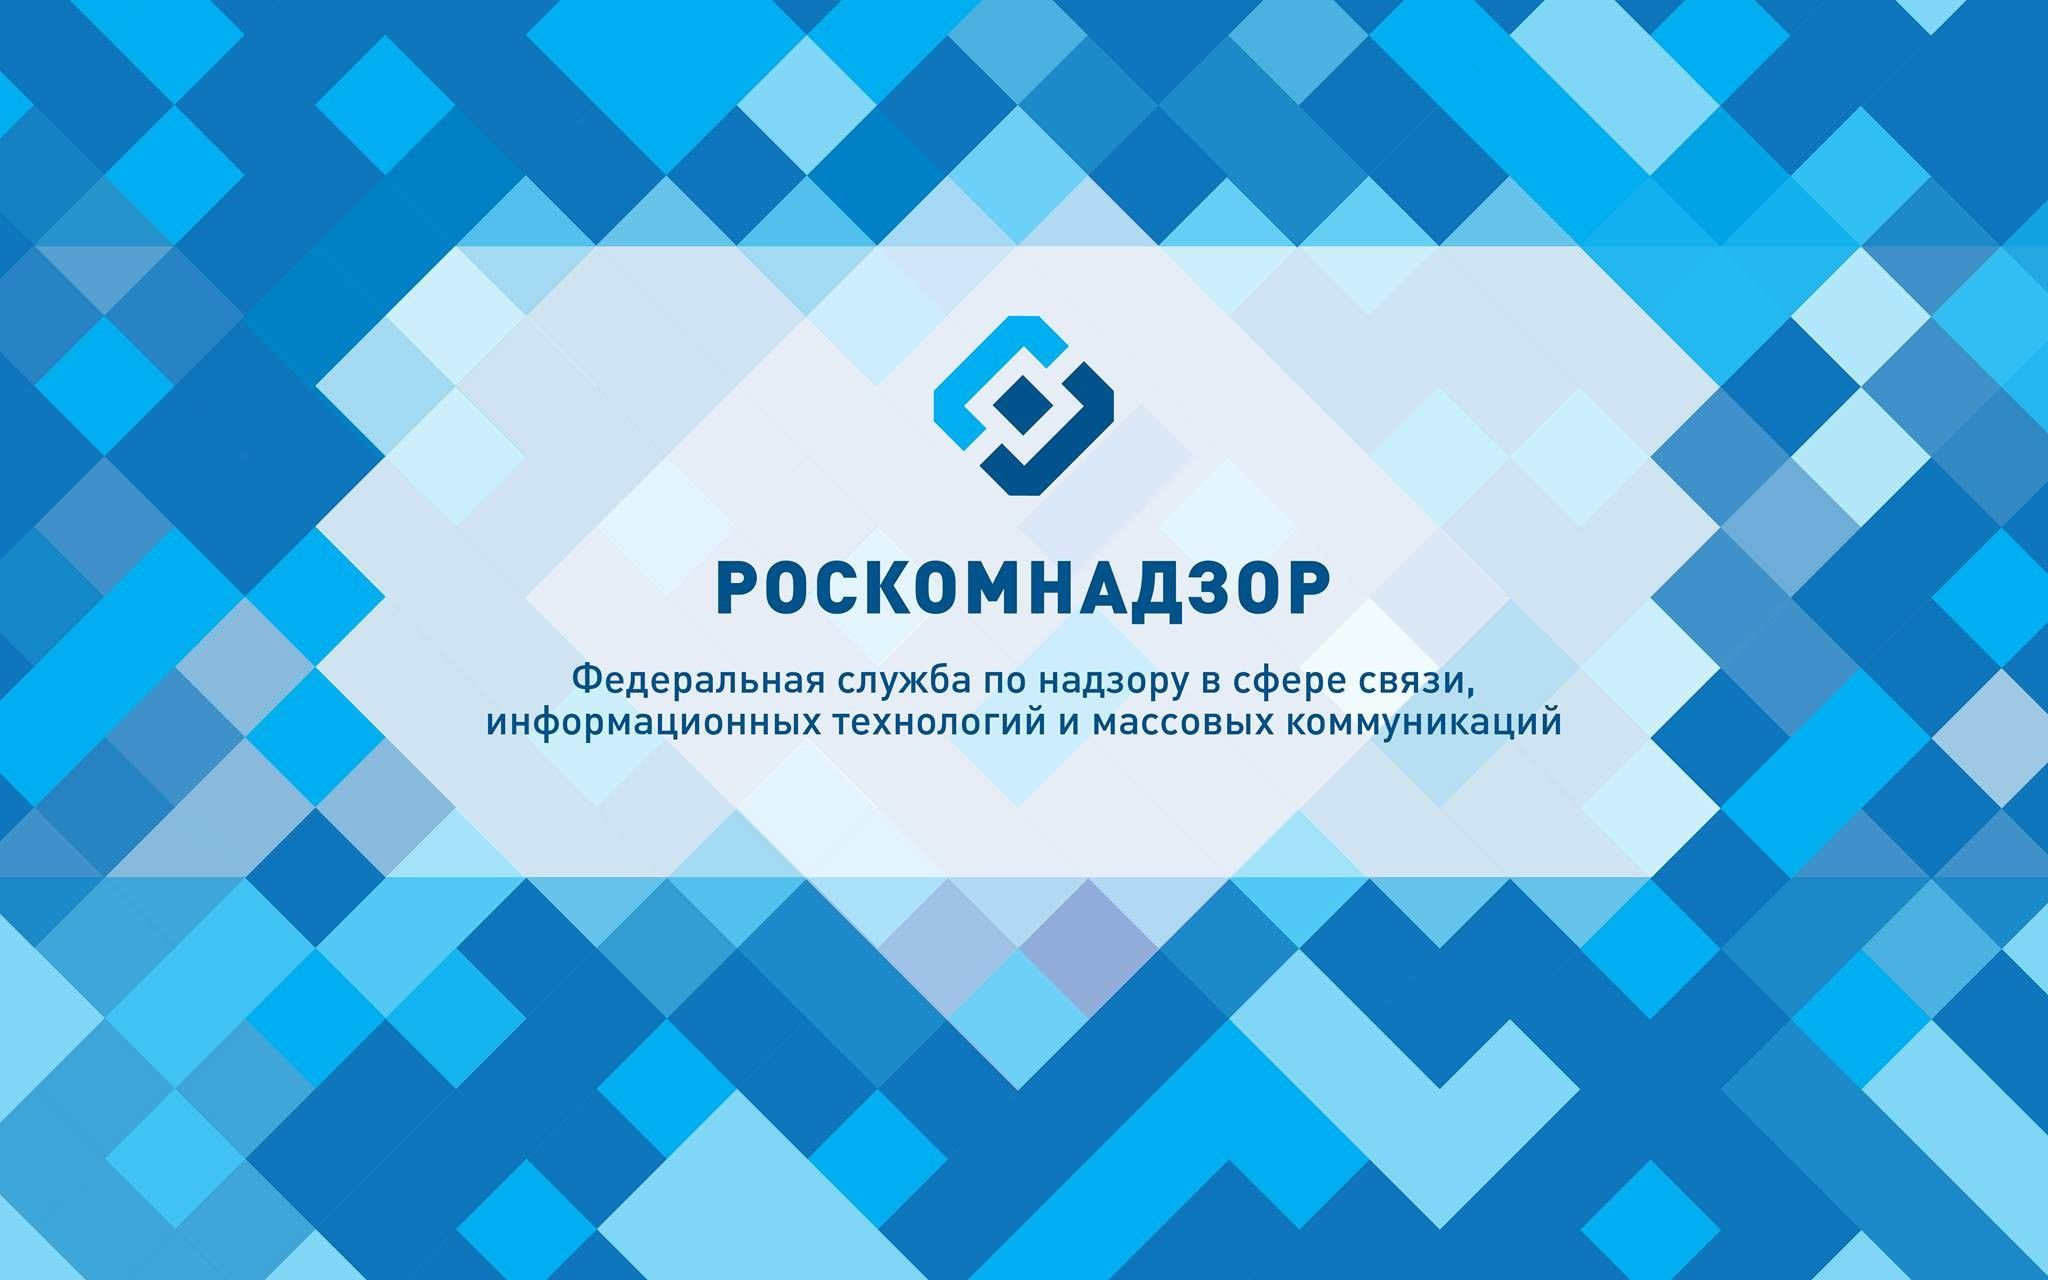 Роскомнадзор запустил реестр соцсетей — в него включили восемь сервисов, включая YouTube и TikTok